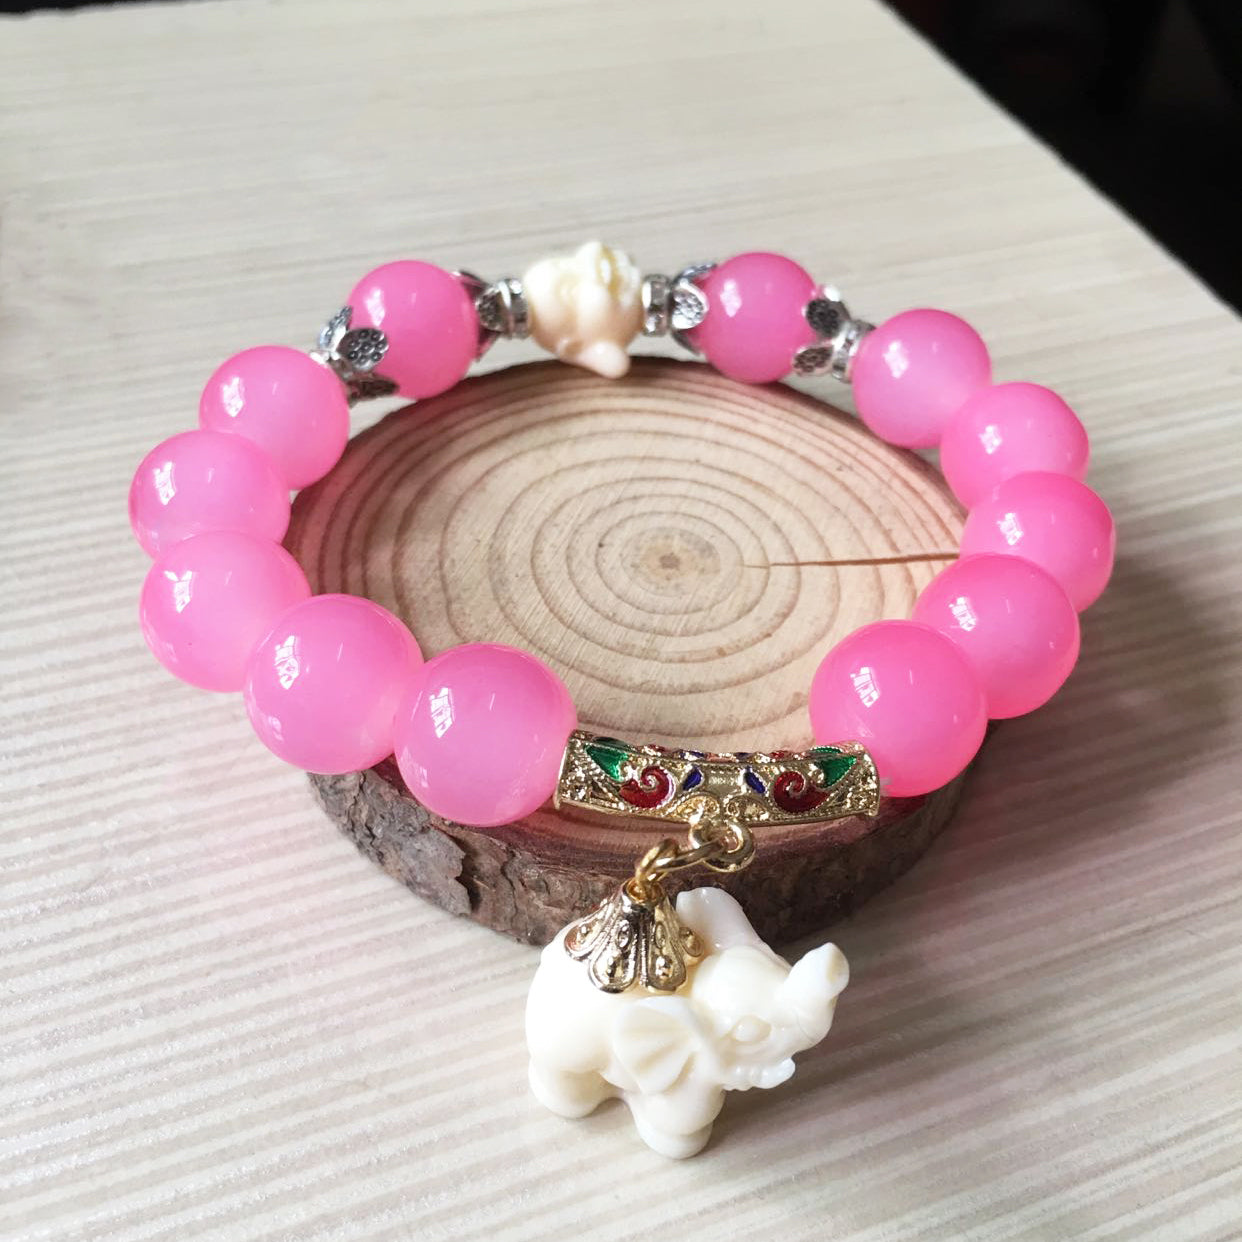 A Crystal Elephant Charm Bracelet with an elephant charm on it by Maramalive™.